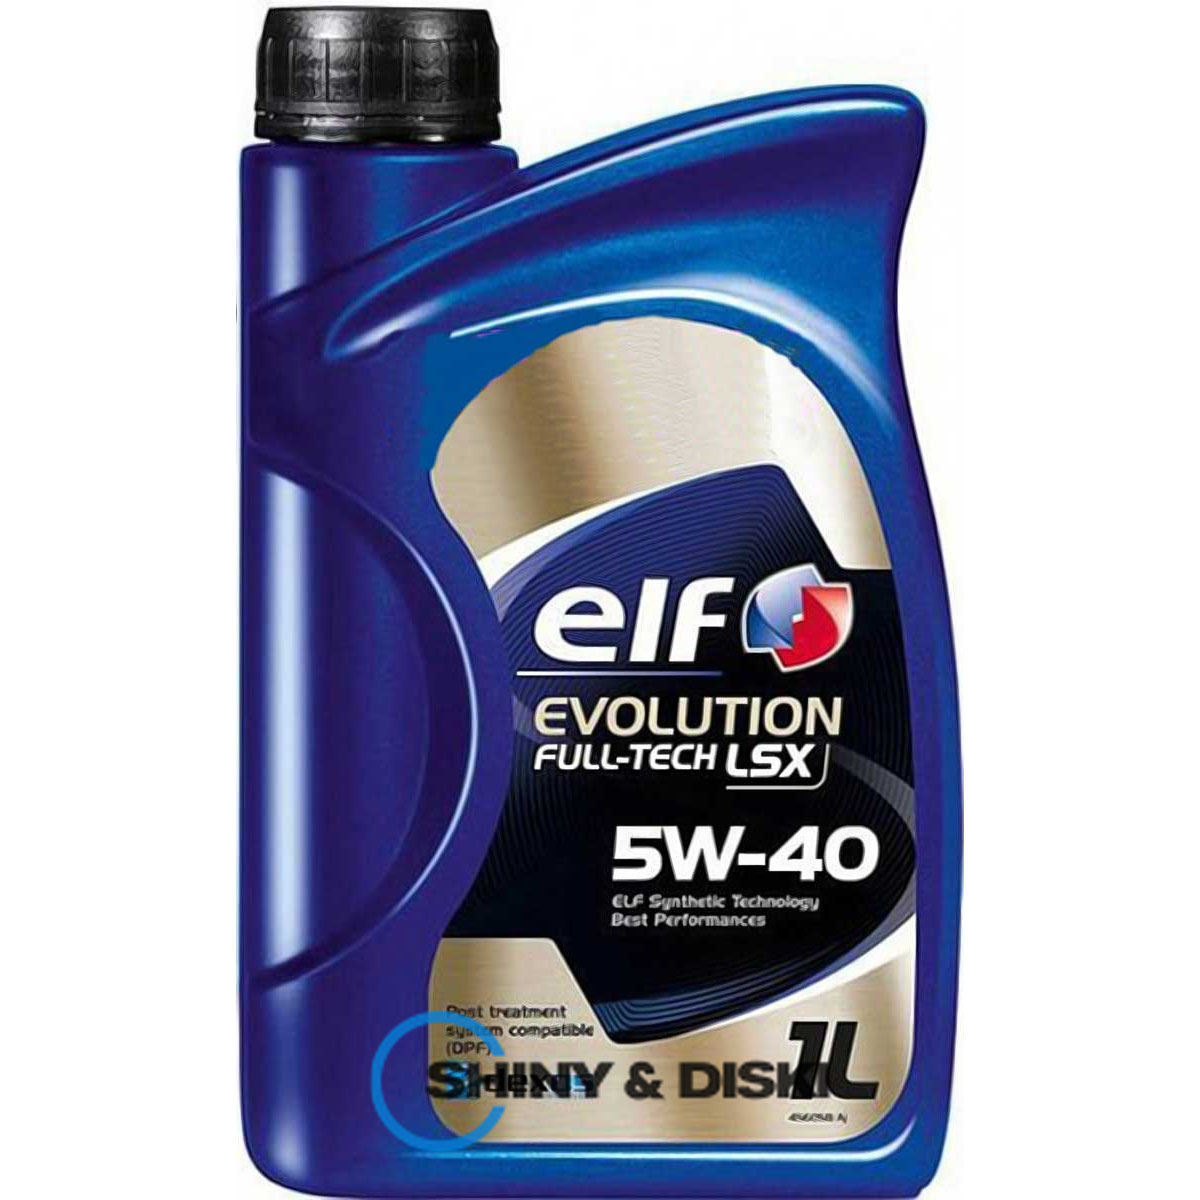 elf evolution full-tech lsx